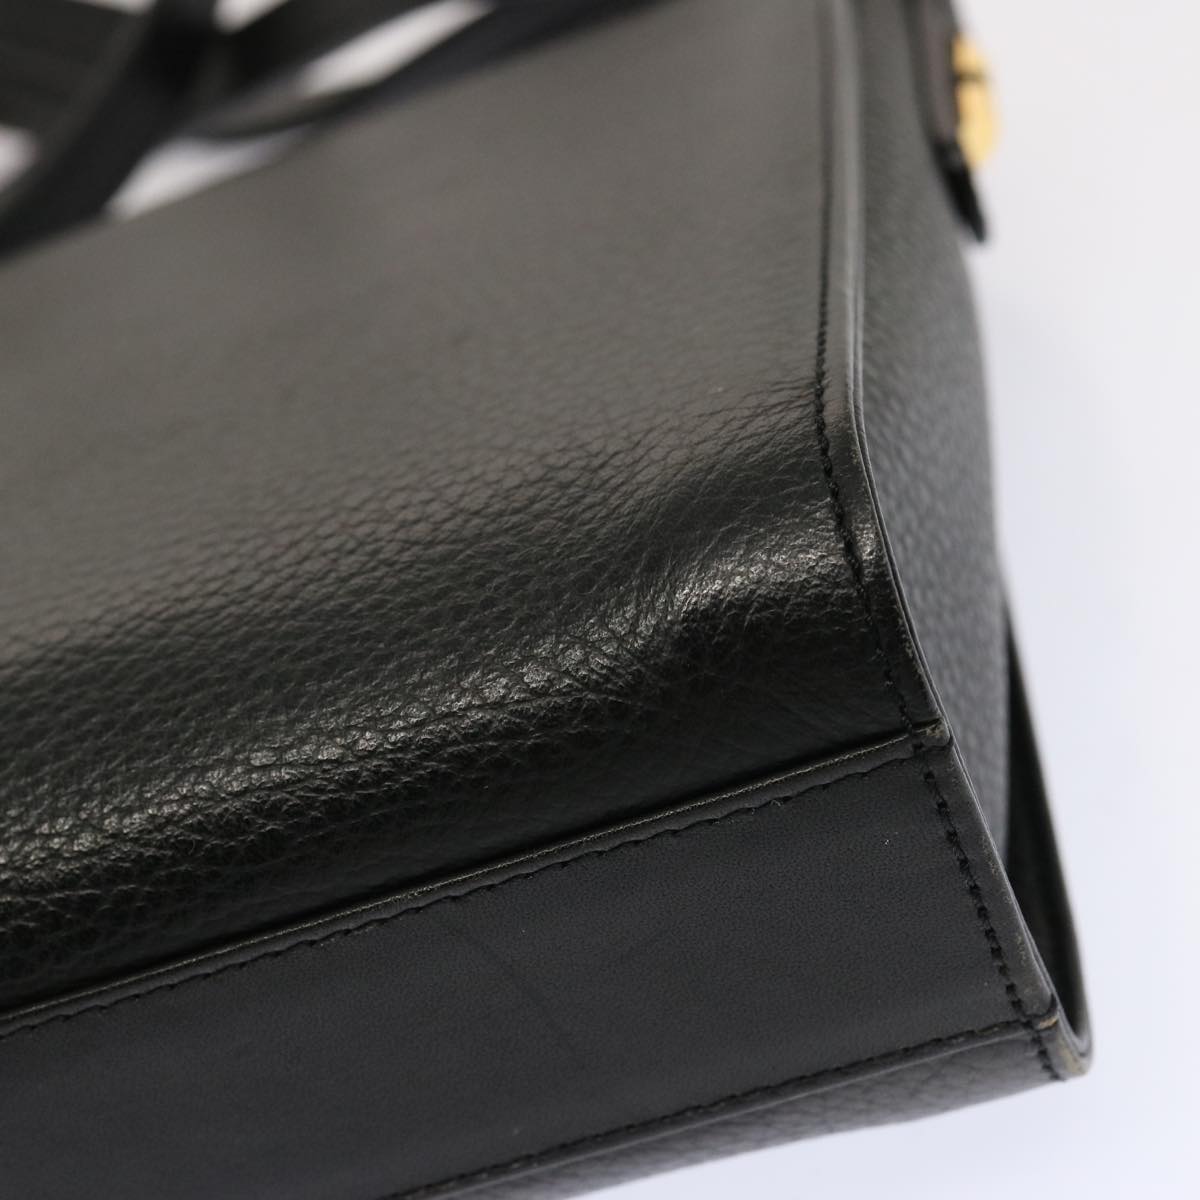 Burberrys Shoulder Bag Leather Black Auth mr101